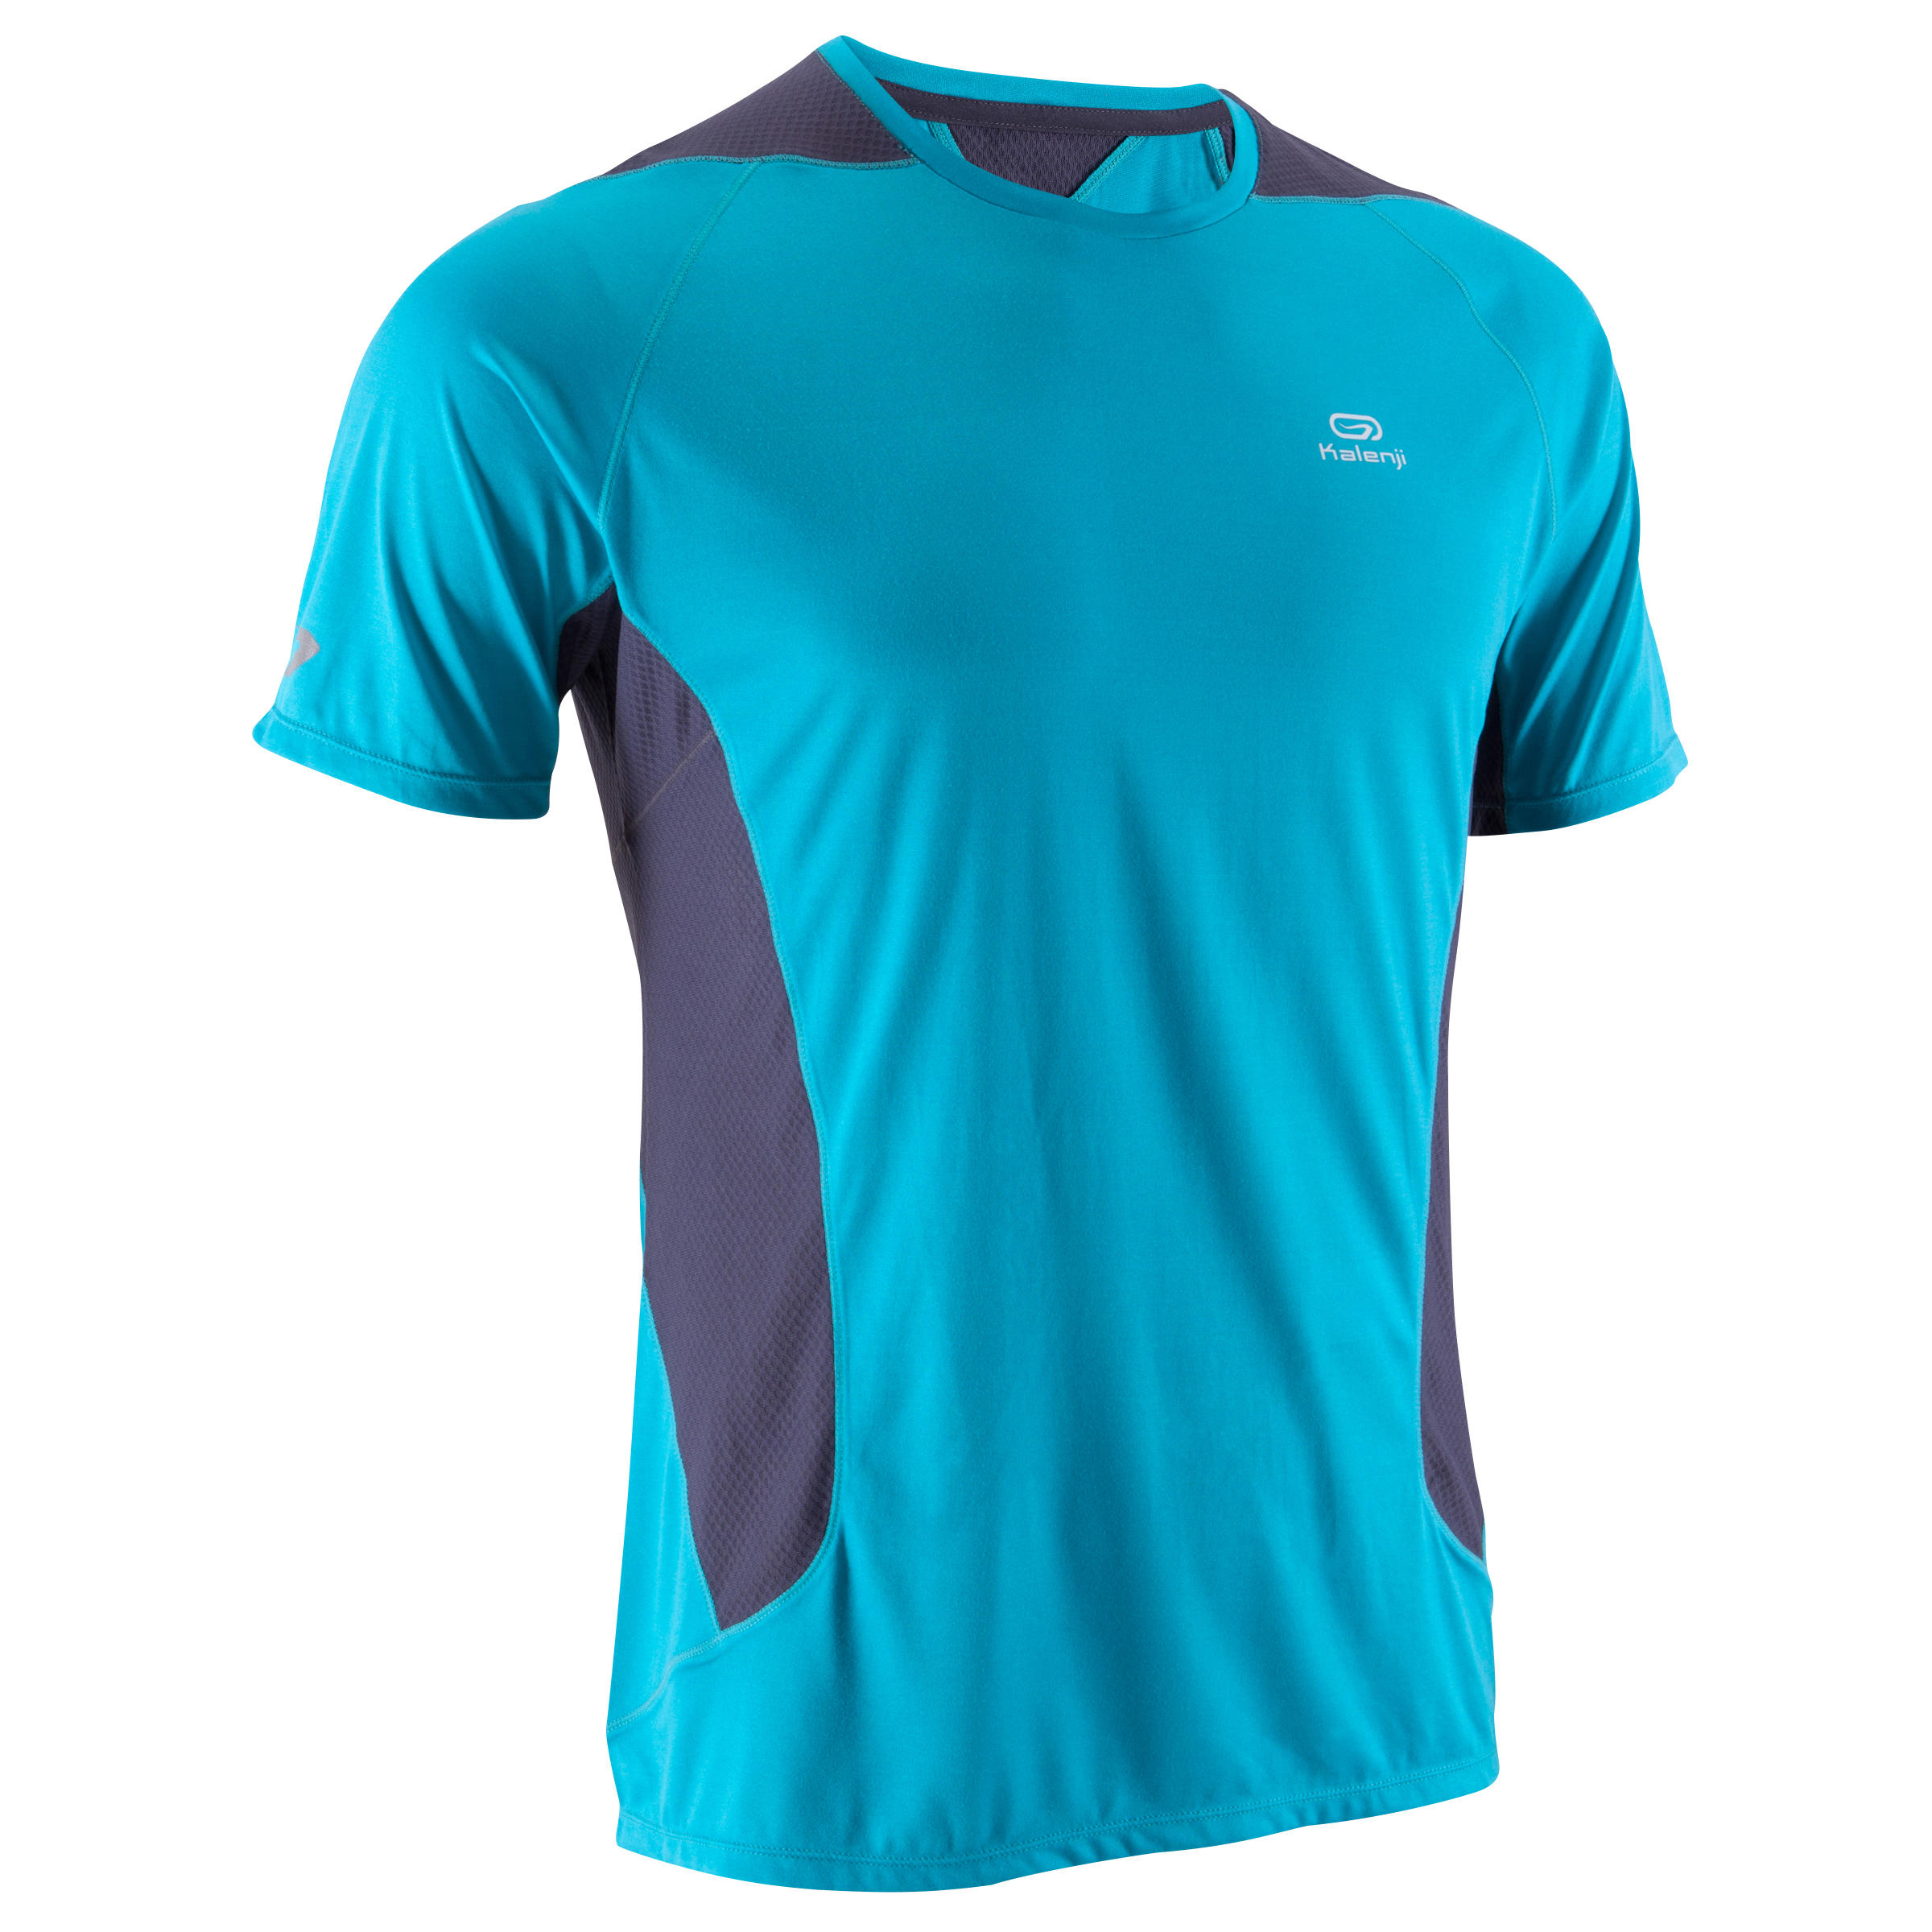 KALENJI Elio Men's Running T-Shirt - blue/grey